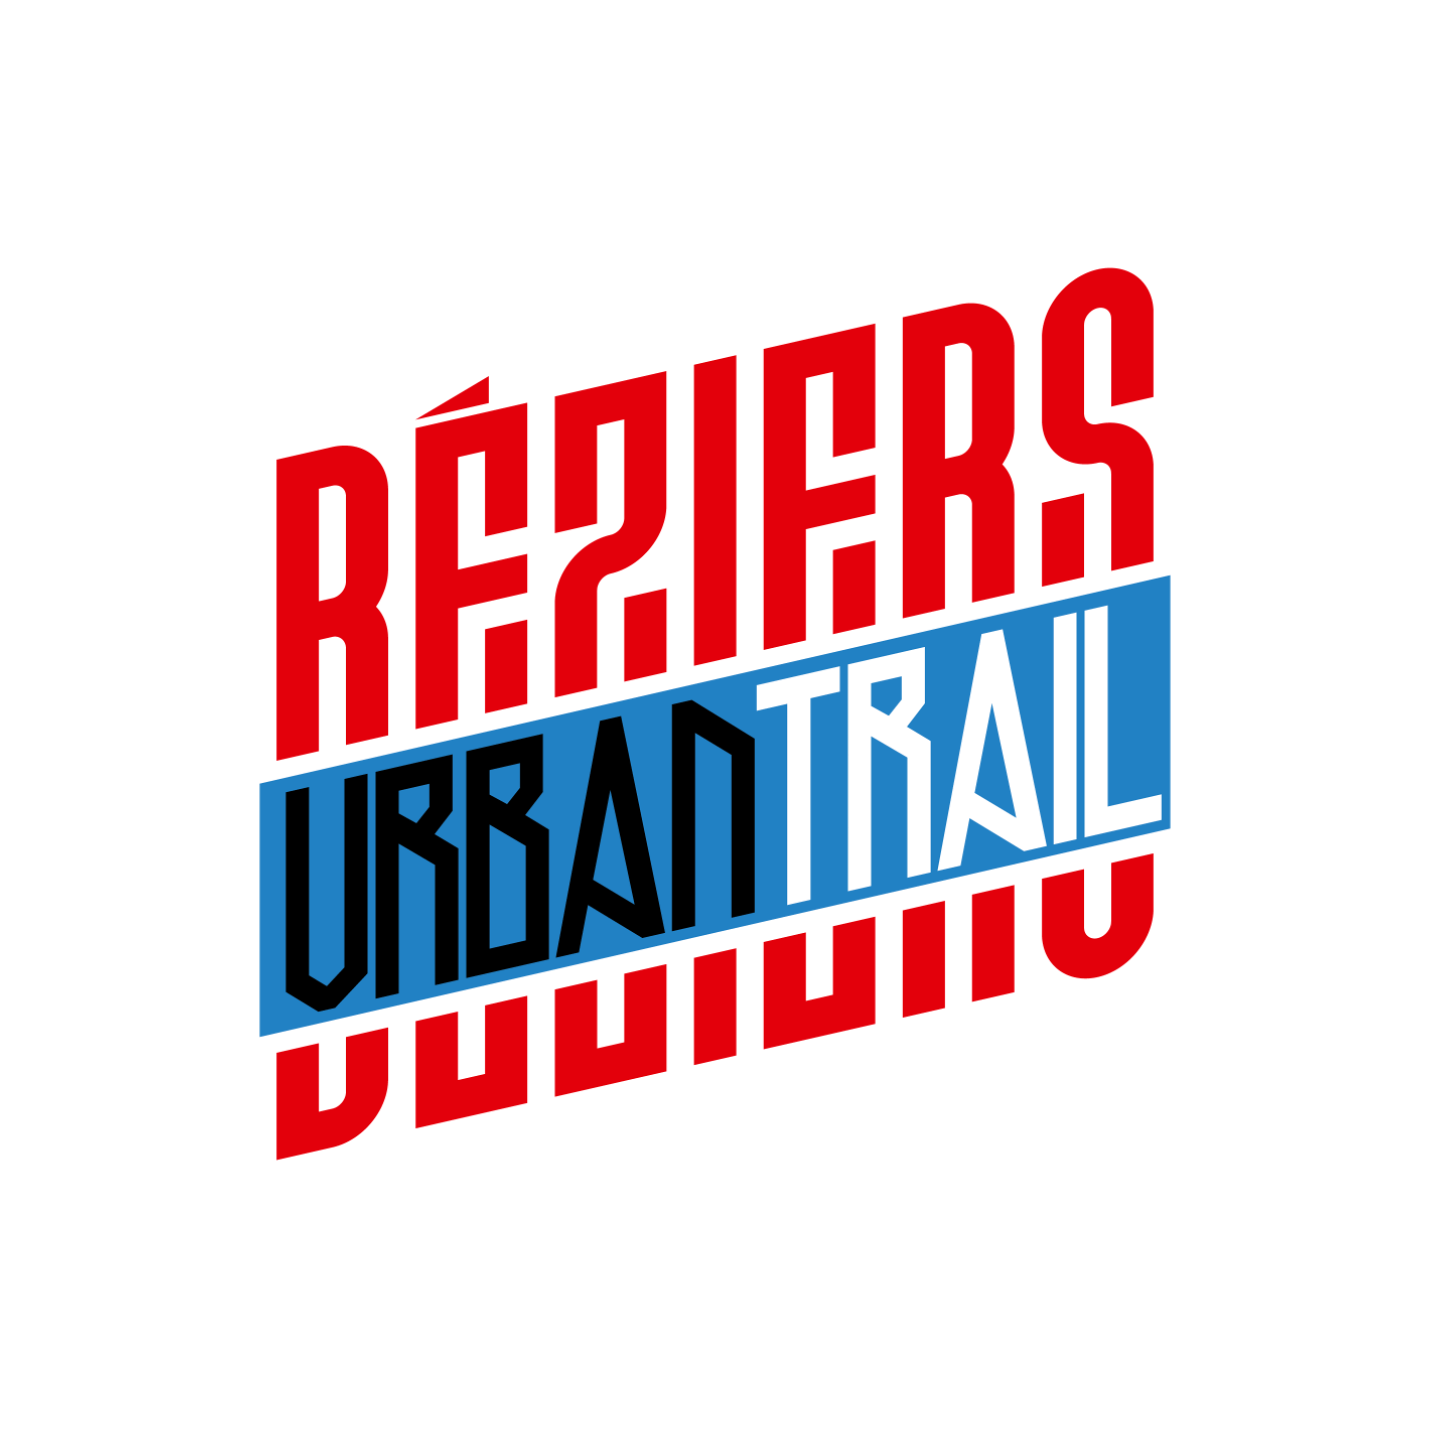 Logo-Beziers-Urban-Trail